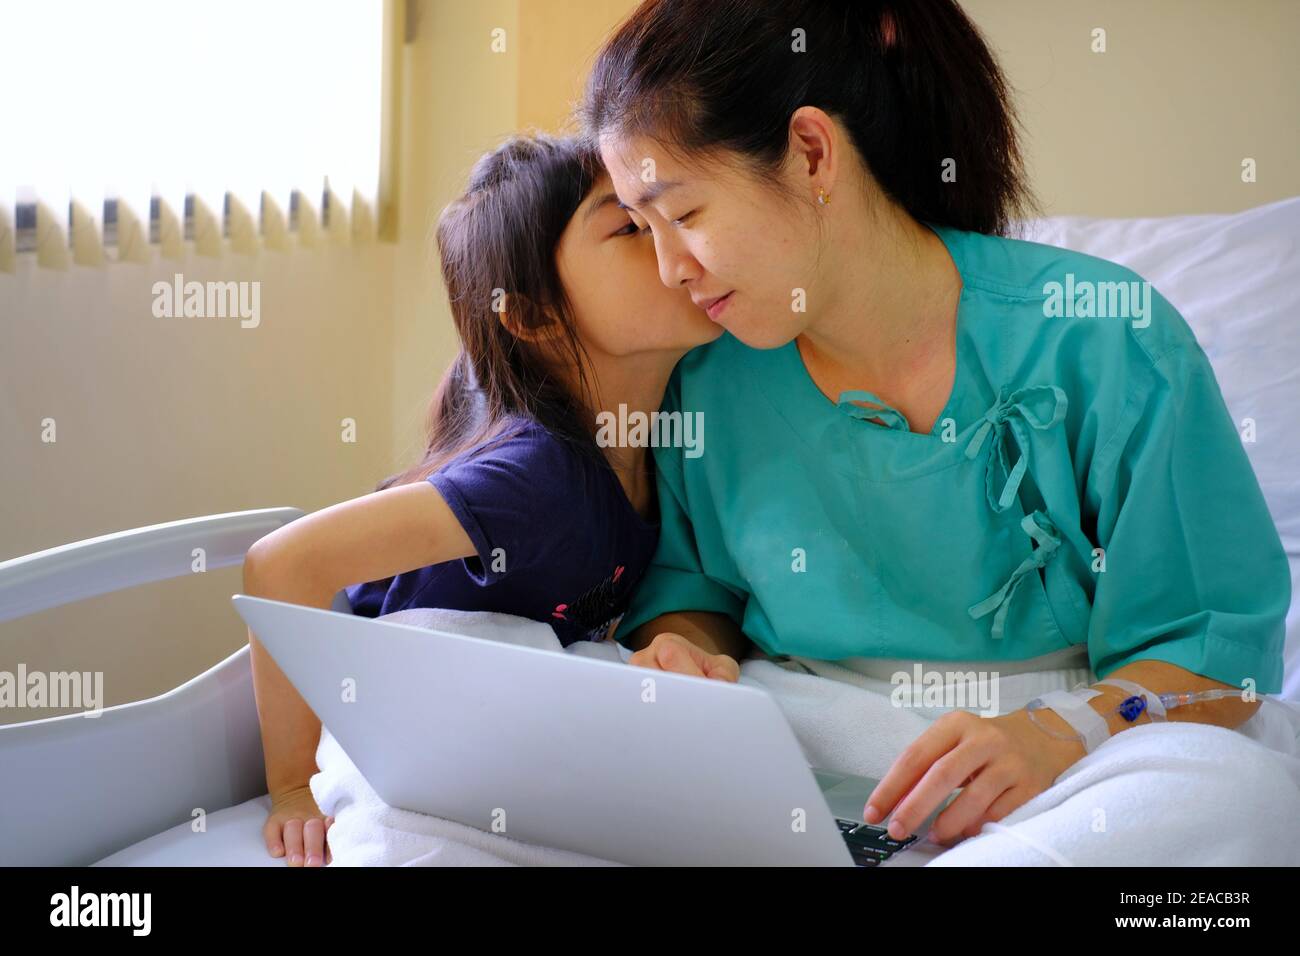 Eine Halbkörperaufnahme einer arbeitsreichen Geschäftsfrau, die in einem Krankenhausbett mit intravenöser Injektion in ihrem Arm sitzt und sich von der Operation erholt, während sie einen Laptop benutzt Stockfoto